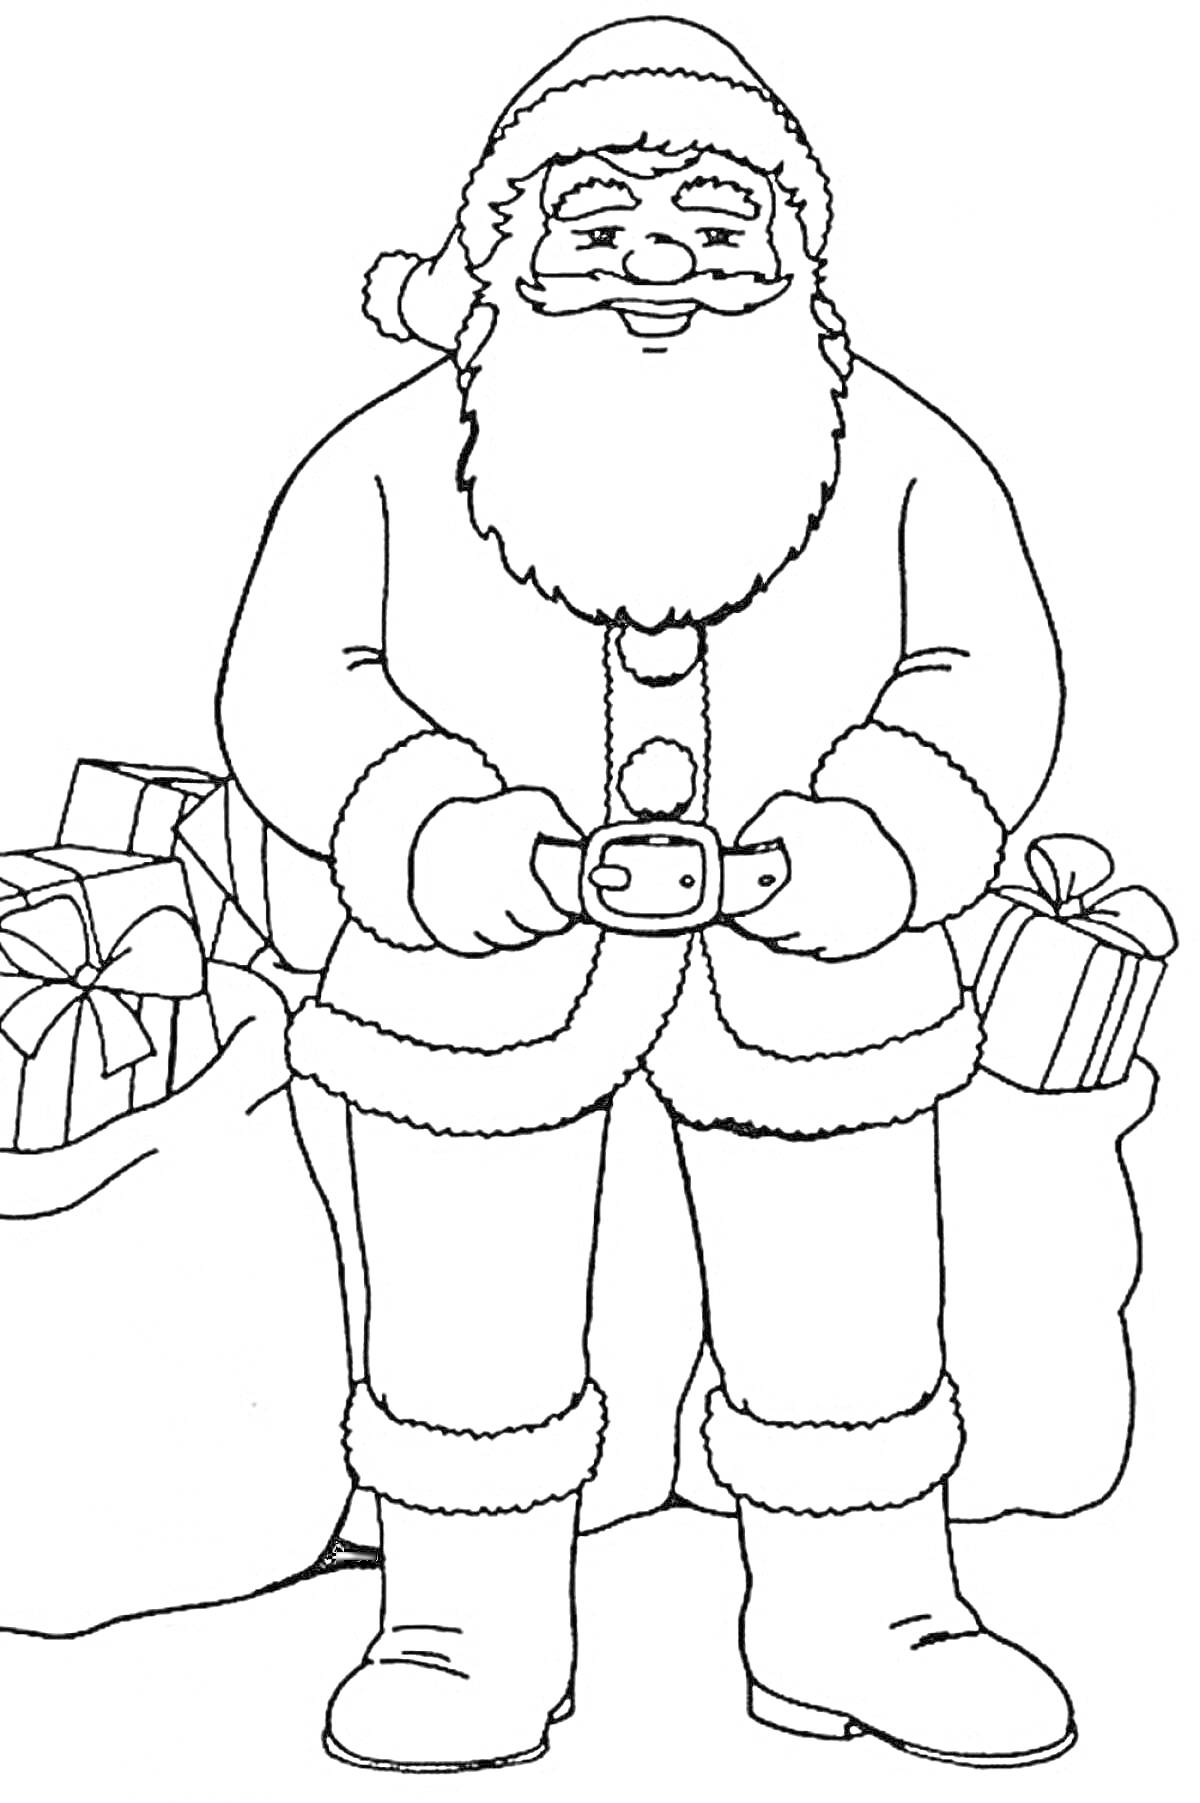 Санта Клаус с мешками подарков и подарками